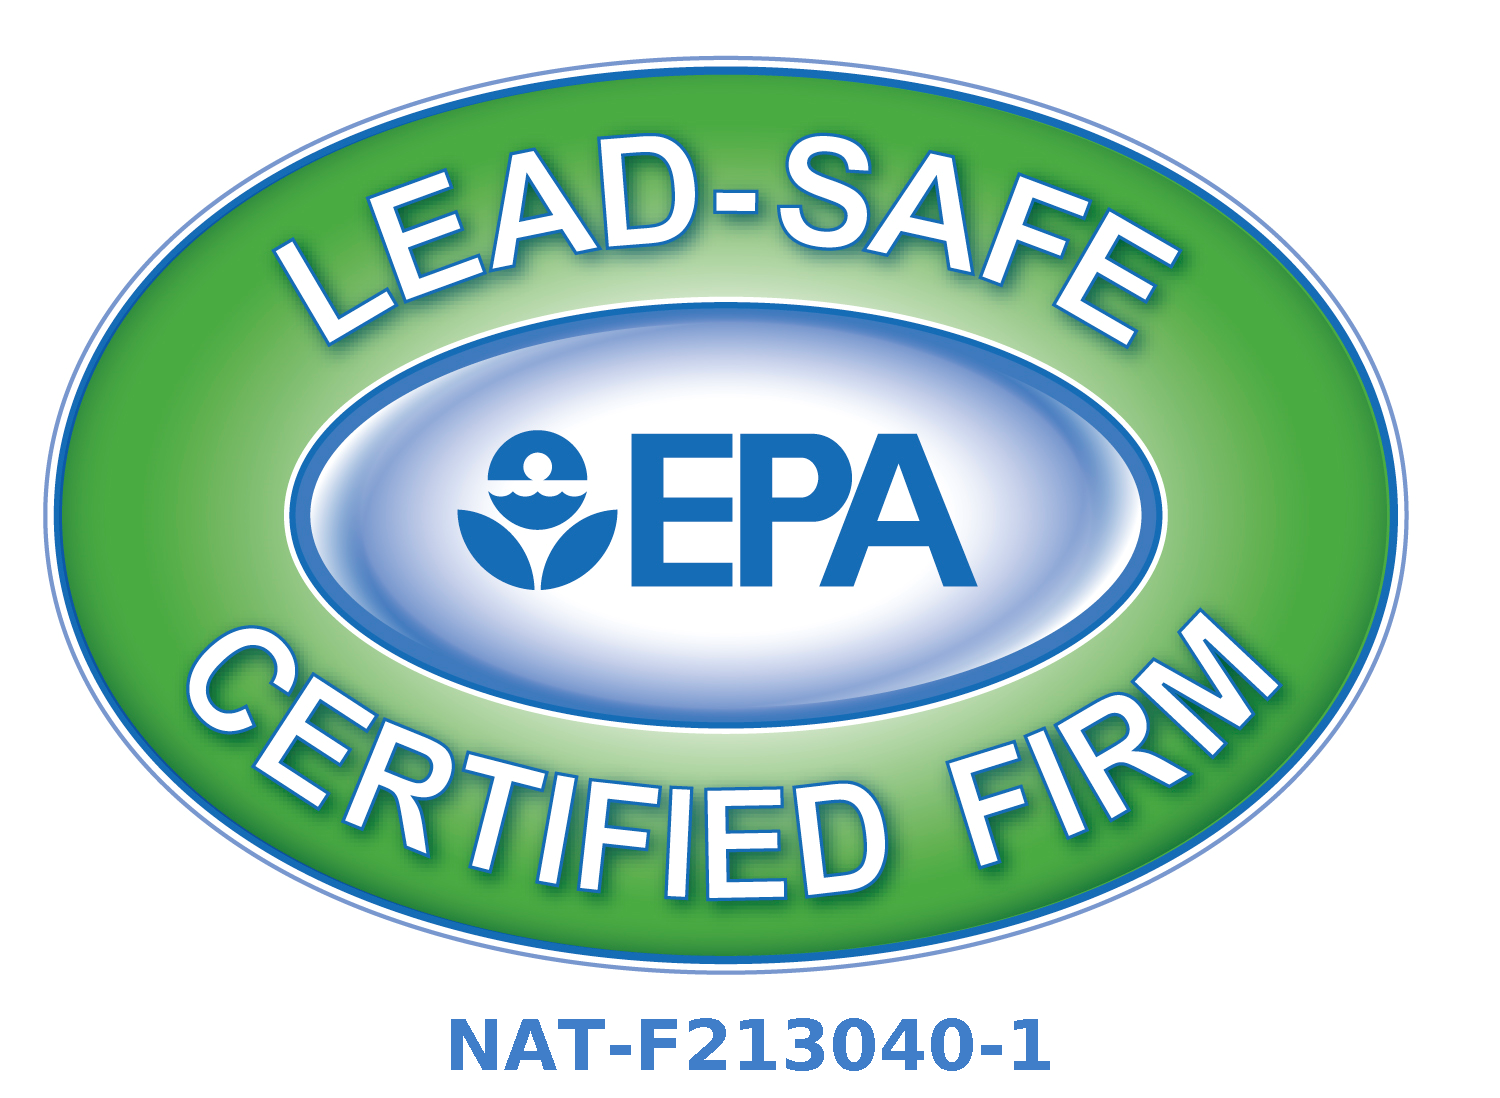 EPA Lead Safe certified firm.